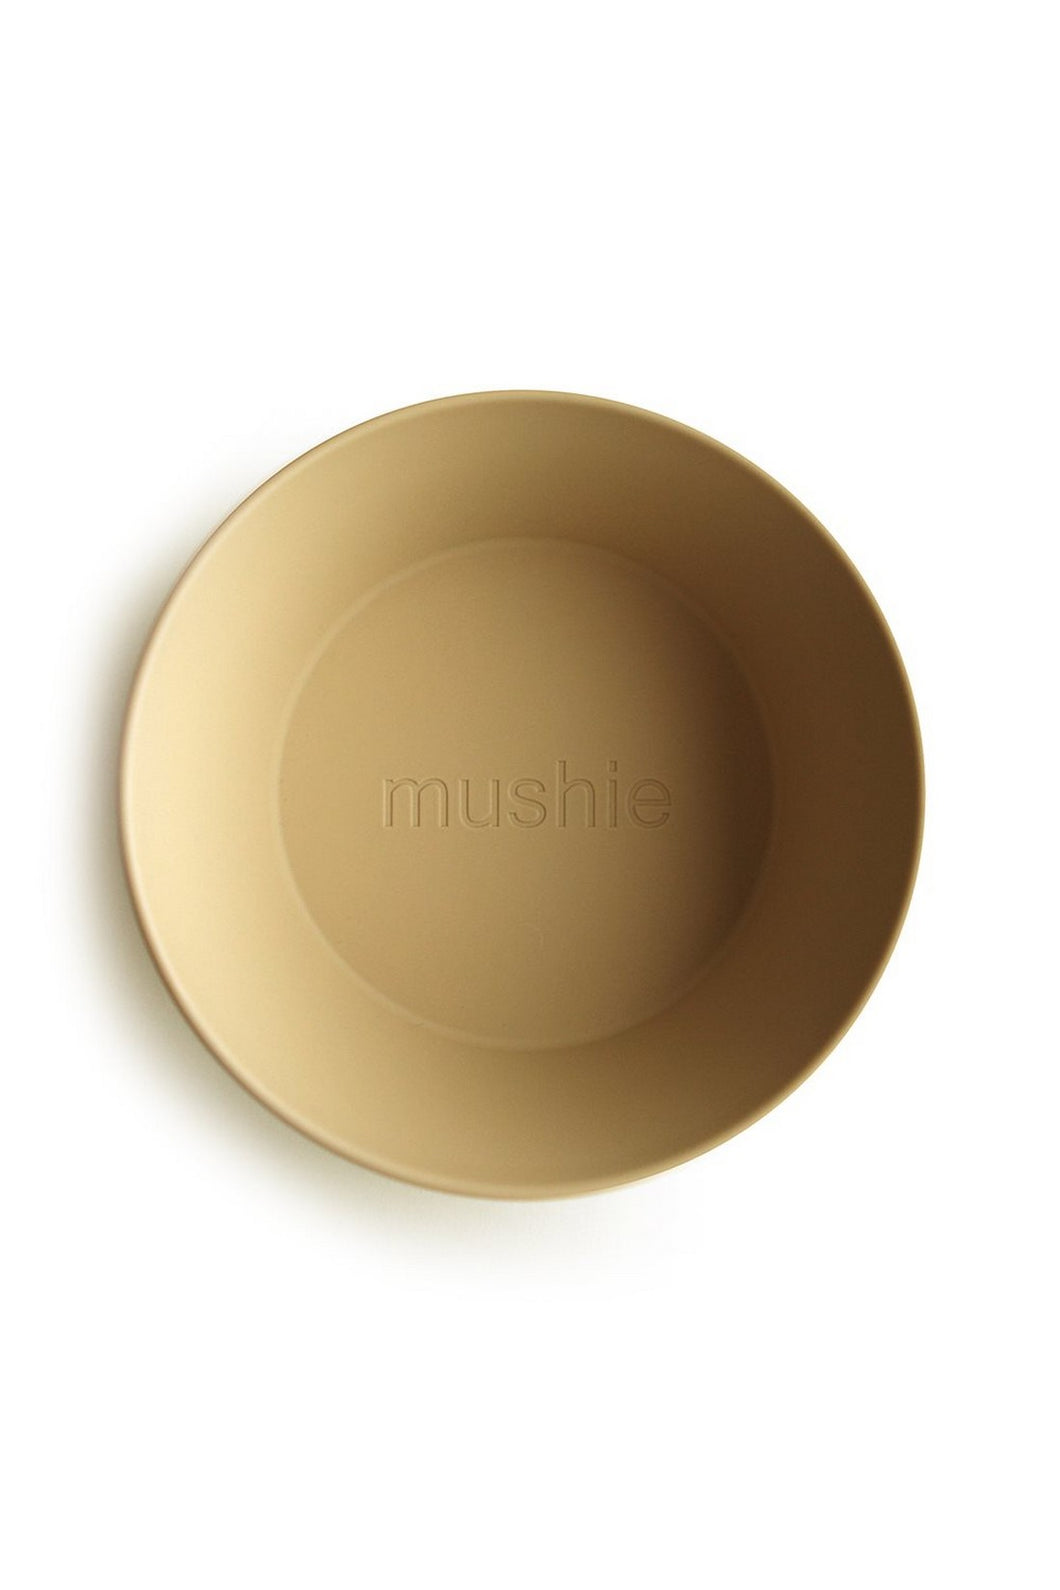 Mushie Round Dinnerware Bowl - 2 Pack Mustard 2